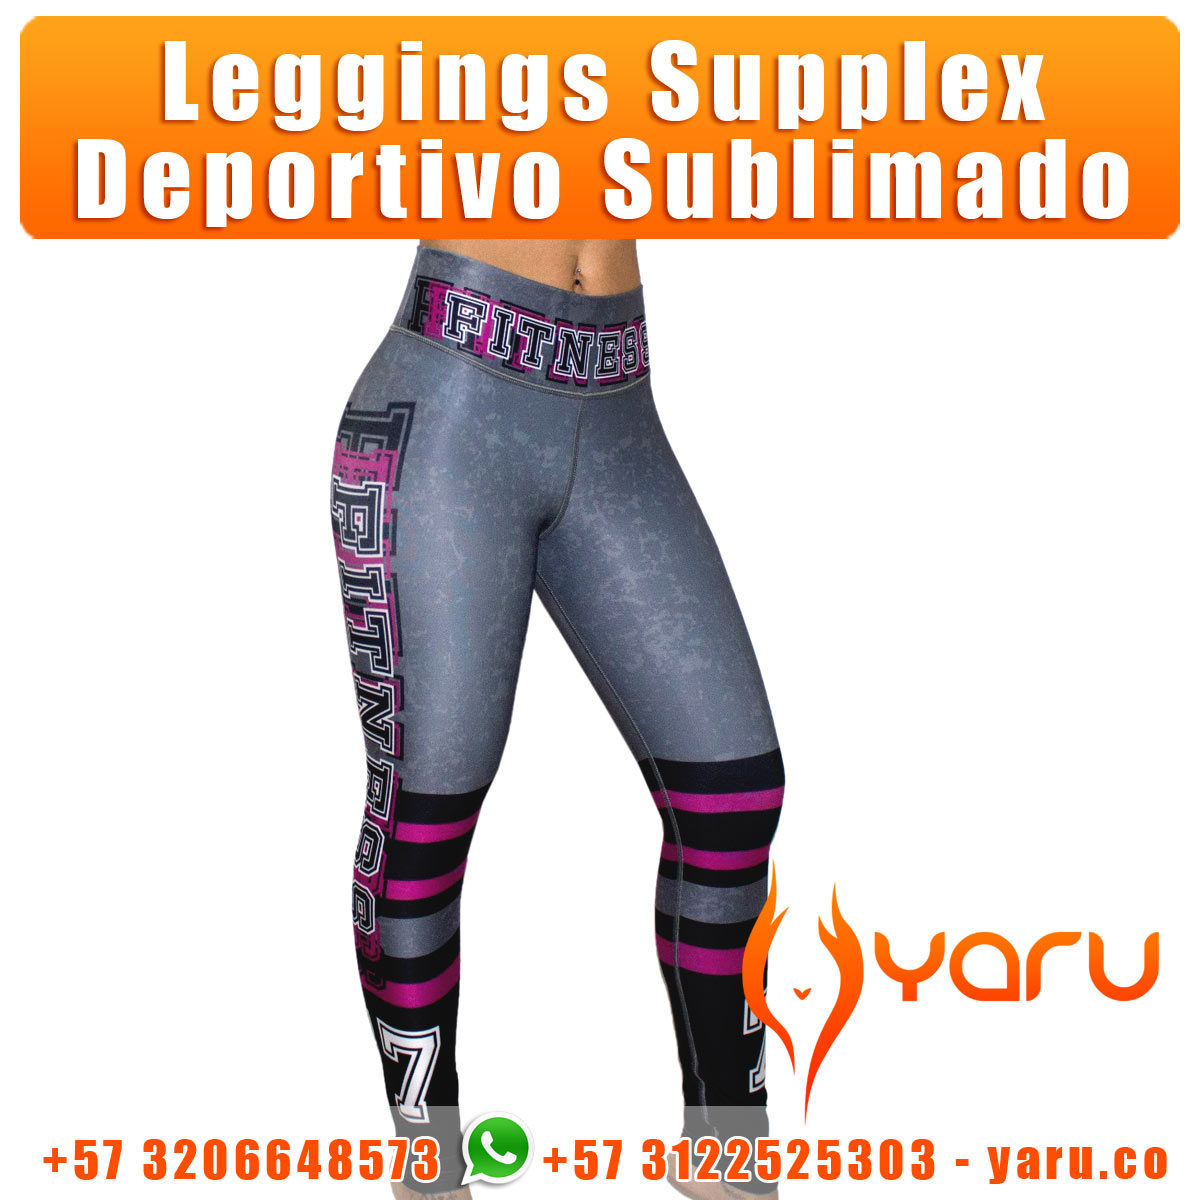 YARU leggings supplex fabrica ropa deportiva cali